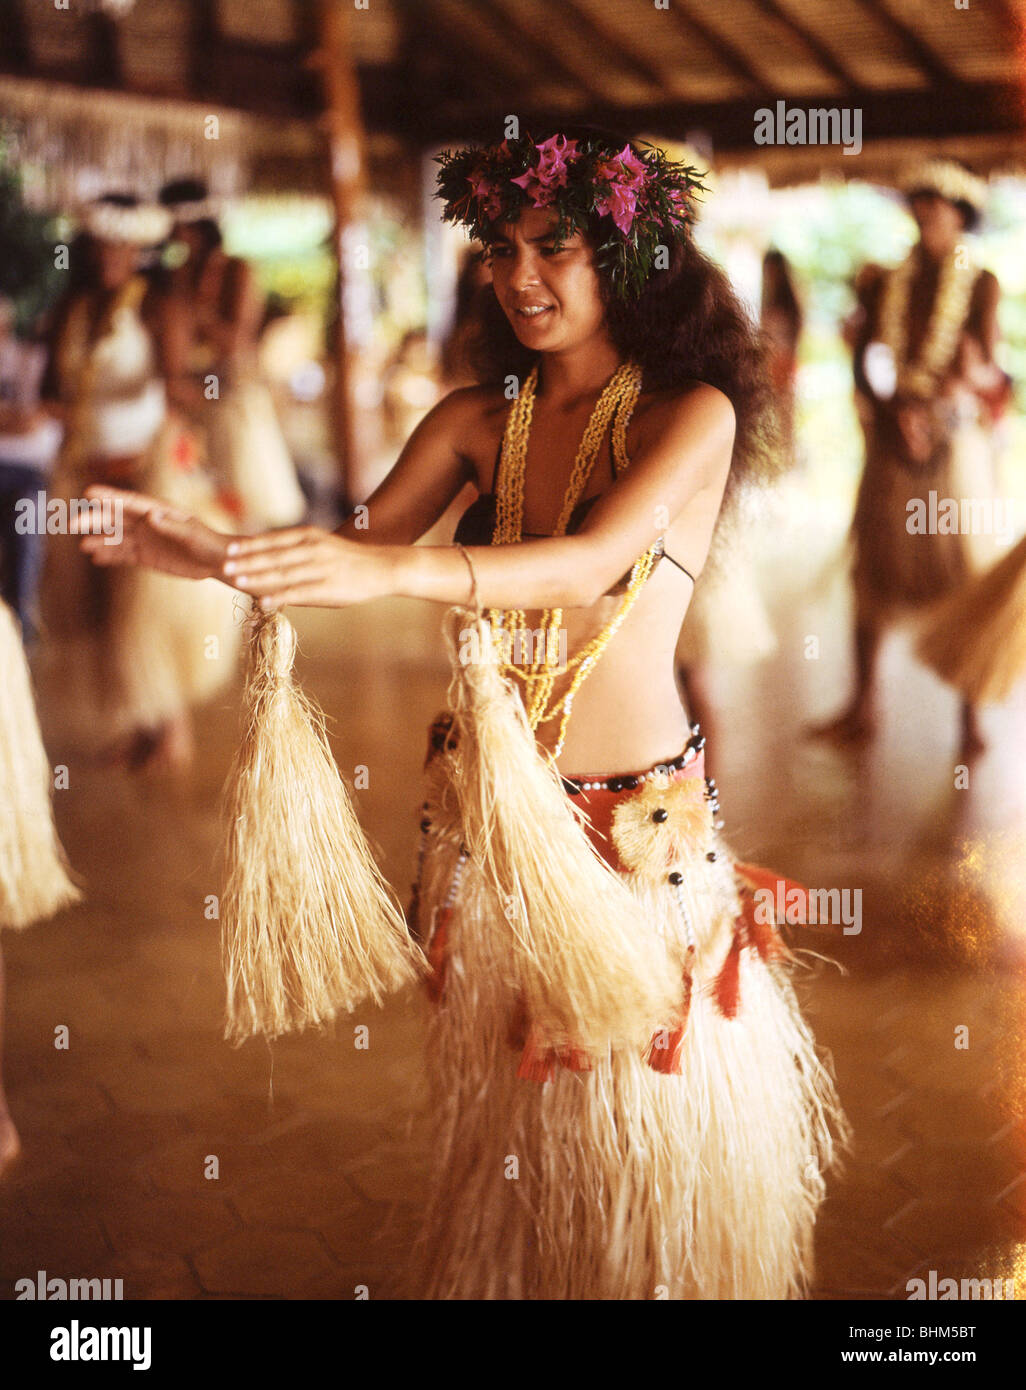 Jeune femme danseuse tahitienne, Moorea, Tahiti, Polynésie Française Banque D'Images